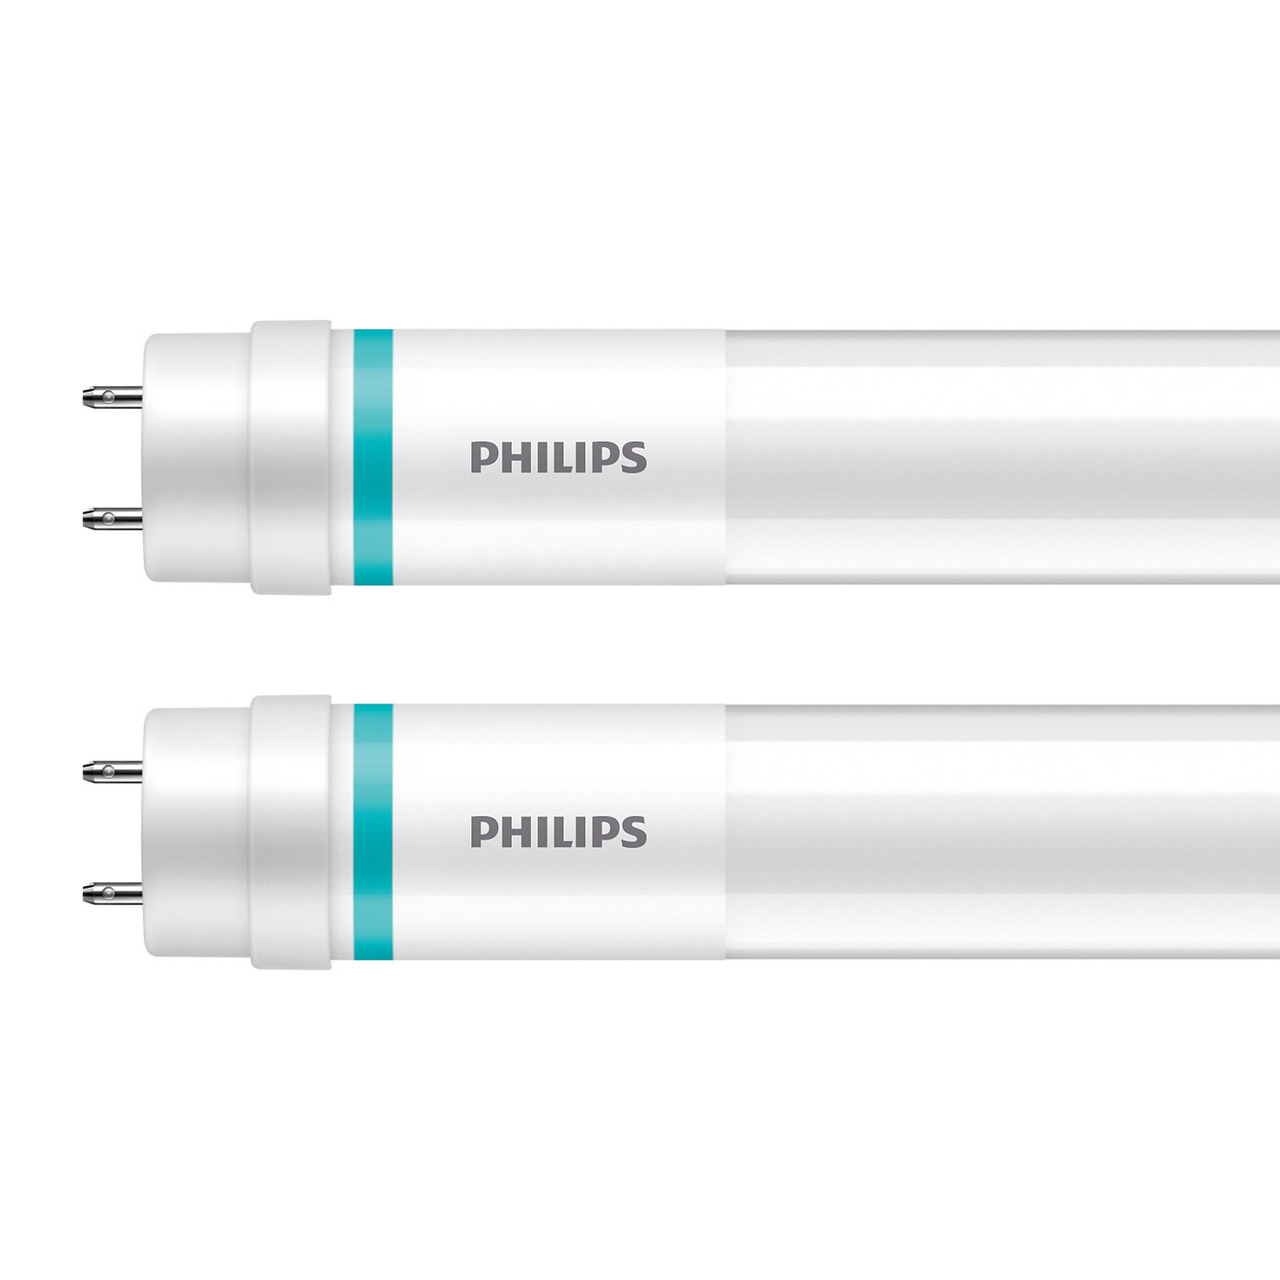 Philips 2er-Set 23-W-T8-LED-Rhrenlampe LEDtube UO- 3700 lm- kaltweiss- KVG-VVG- 150 cm unter Beleuchtung